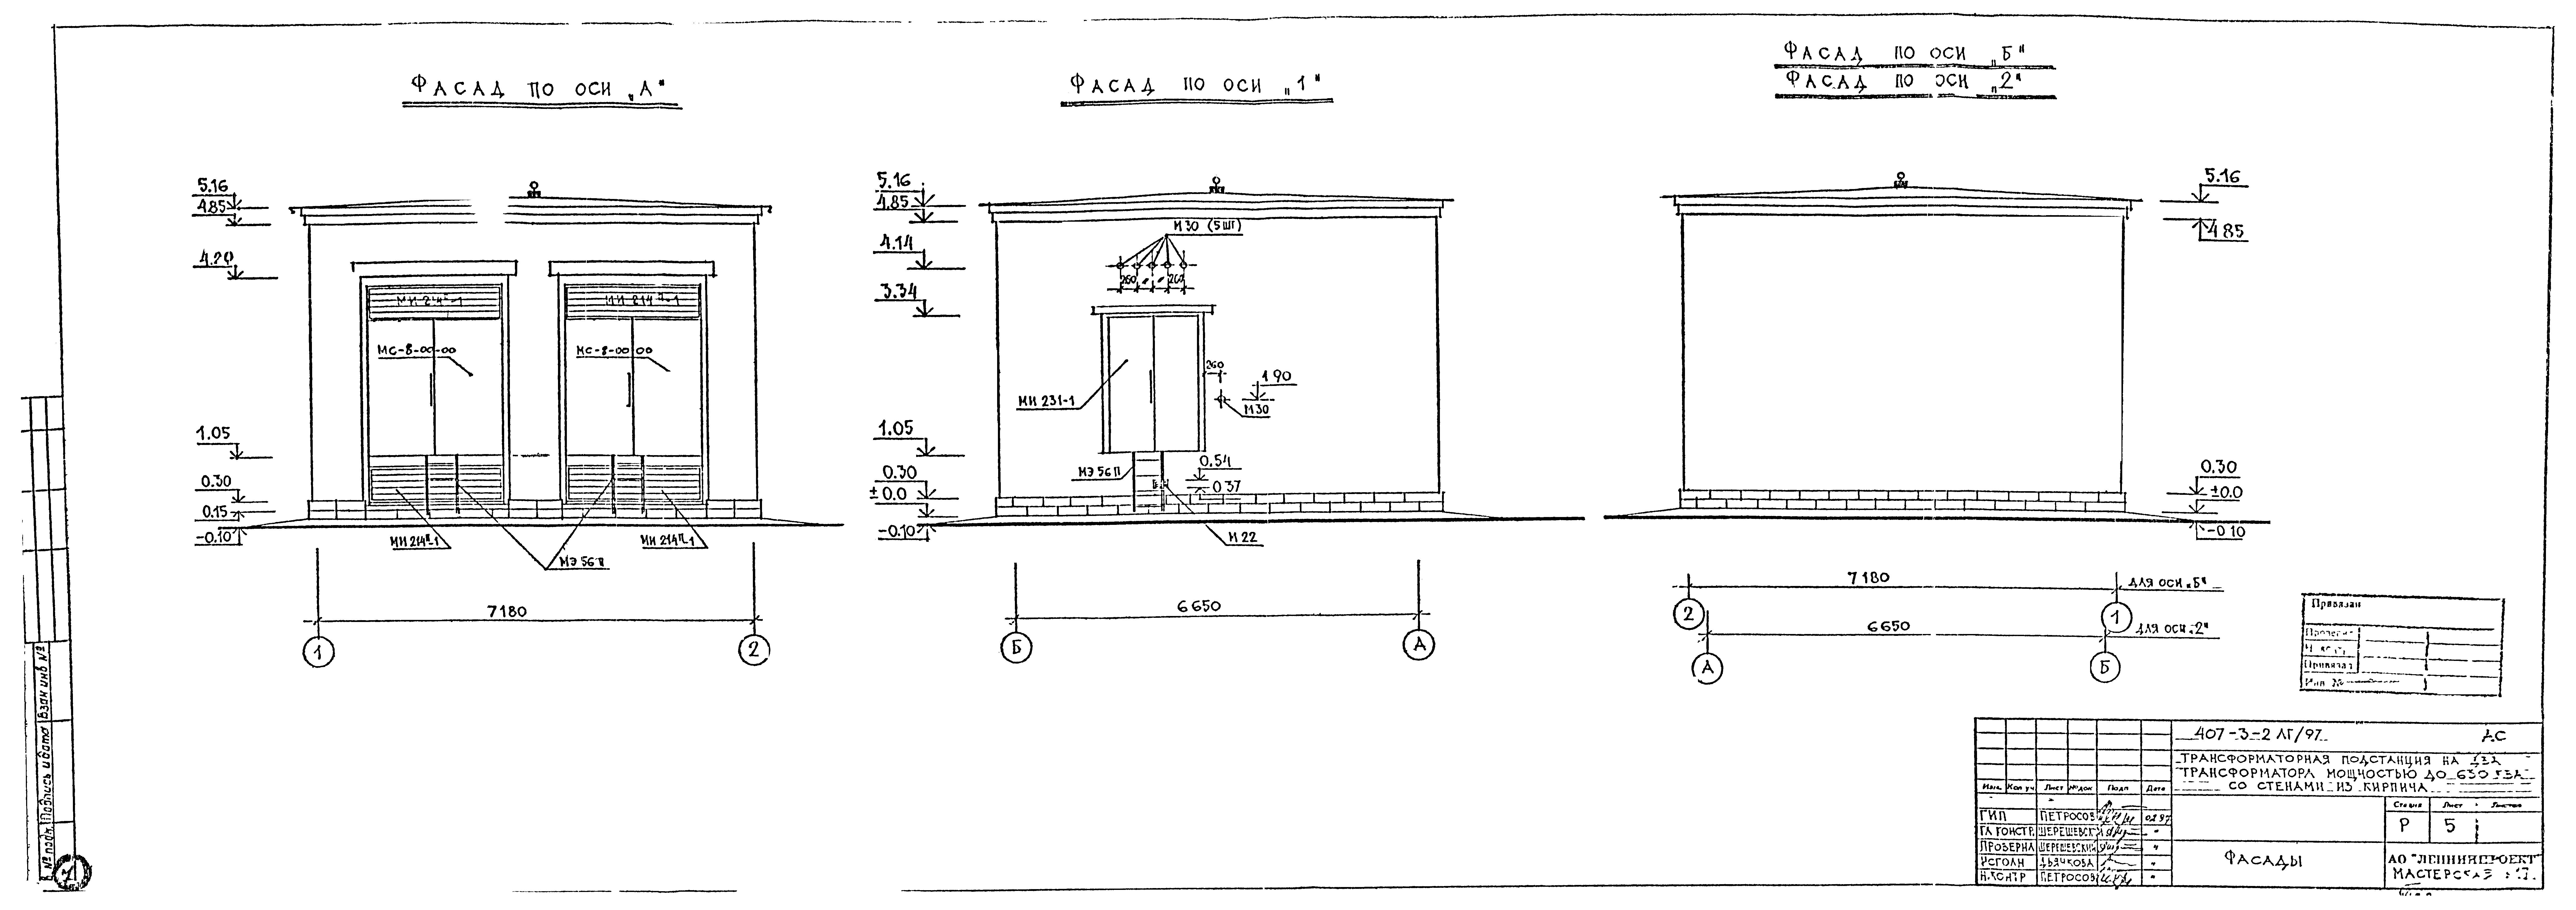 Типовой проект 407-3-2ЛГ/97